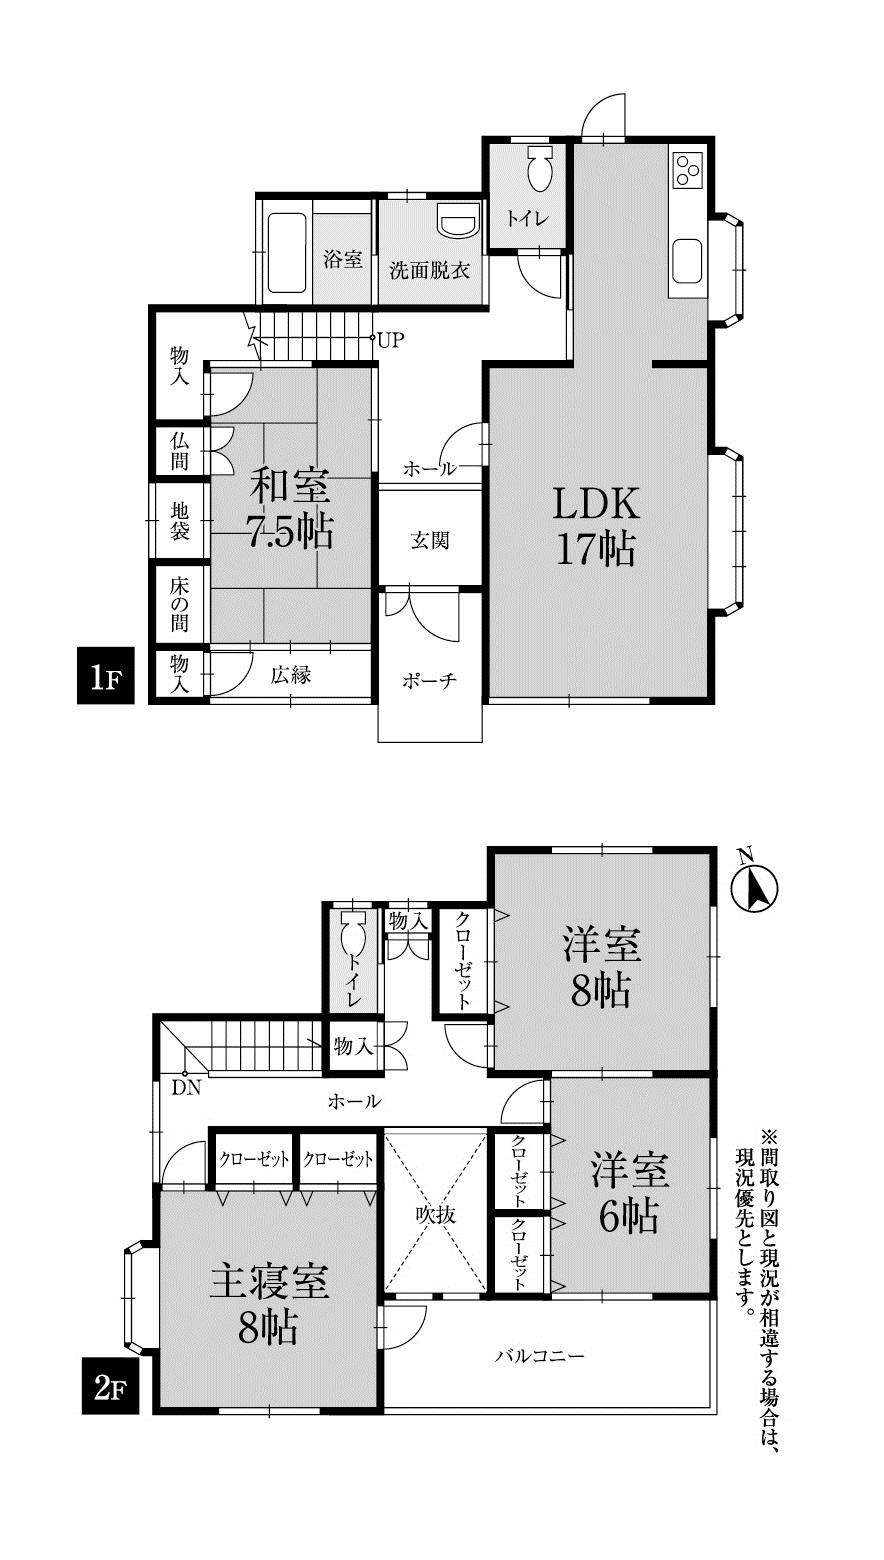 Floor plan. 18.3 million yen, 4LDK, Land area 175.13 sq m , Building area 129.17 sq m